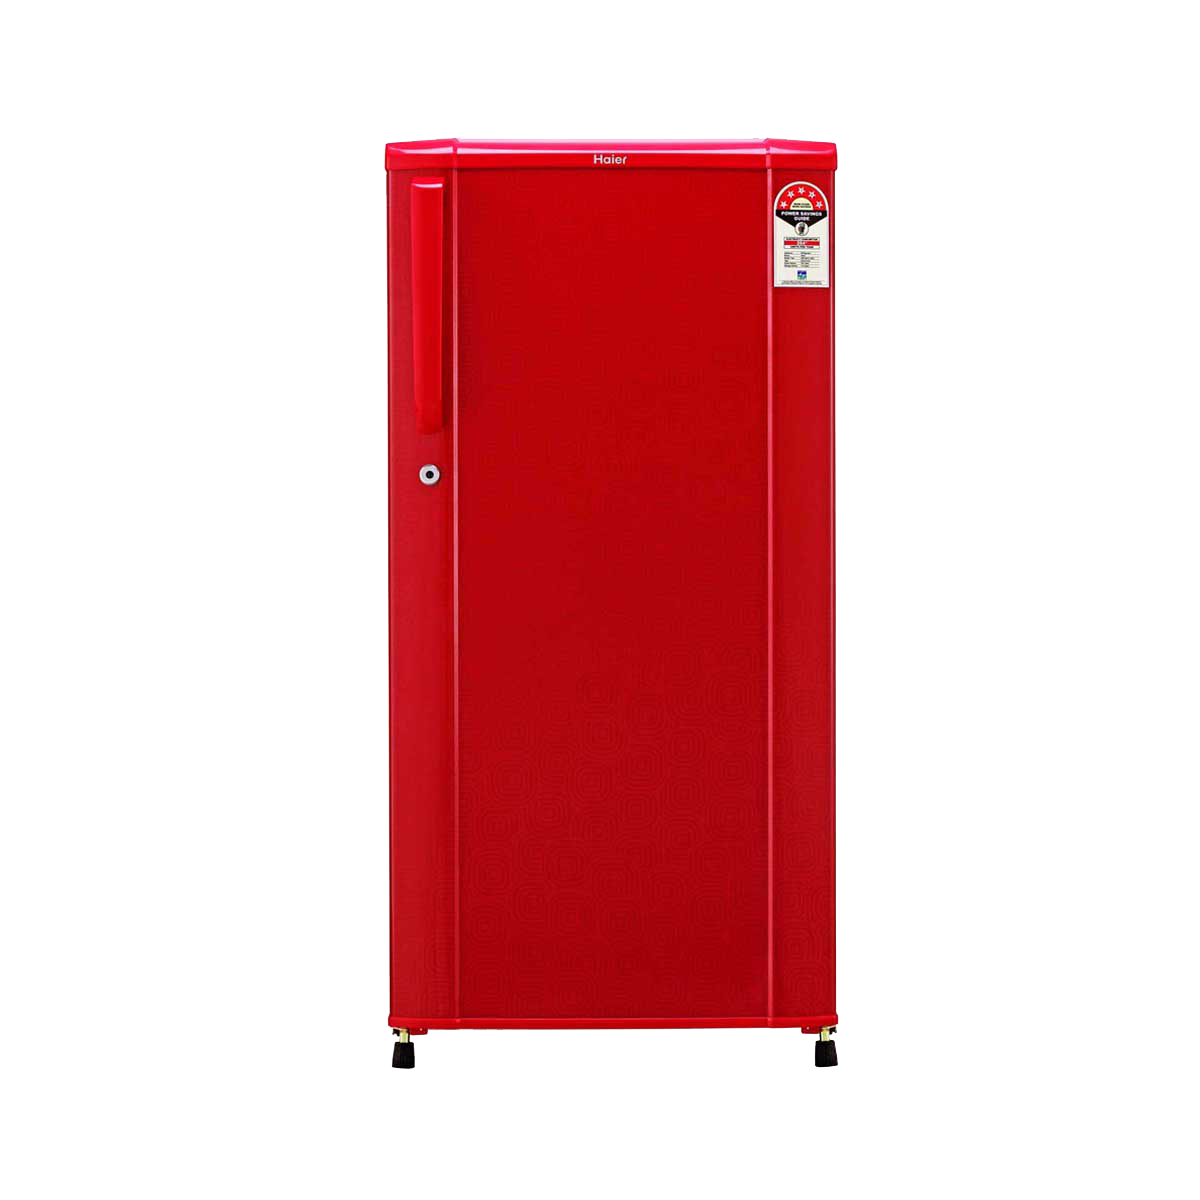 Refrigerator I-download ang PNG Image